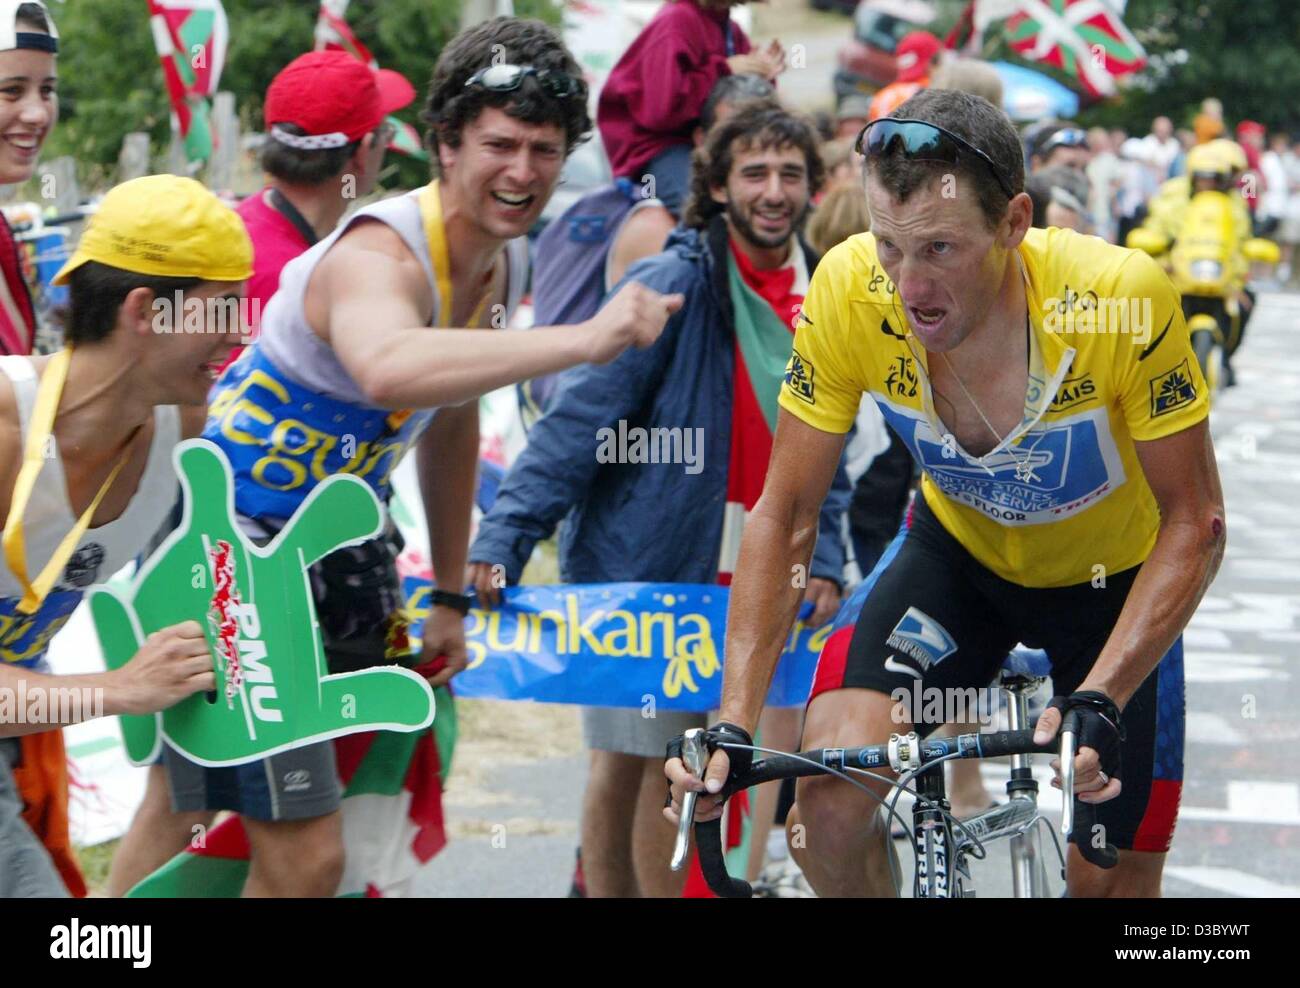 (Dpa) - Zuschauer schreien Ermutigung für US-Radsportler und Spitzenreiter Lance Armstrong (Team uns Postal-Berry Floor) während der 15. Etappe der Tour de France von Bagneres de Bigorre in Luz-Ardiden in den Pyrenäen, Frankreich, 21. Juli 2003. Trotz einen schweren Sturz konnte Armstrong seinen Vorsprung um 1 erhöhen Stockfoto